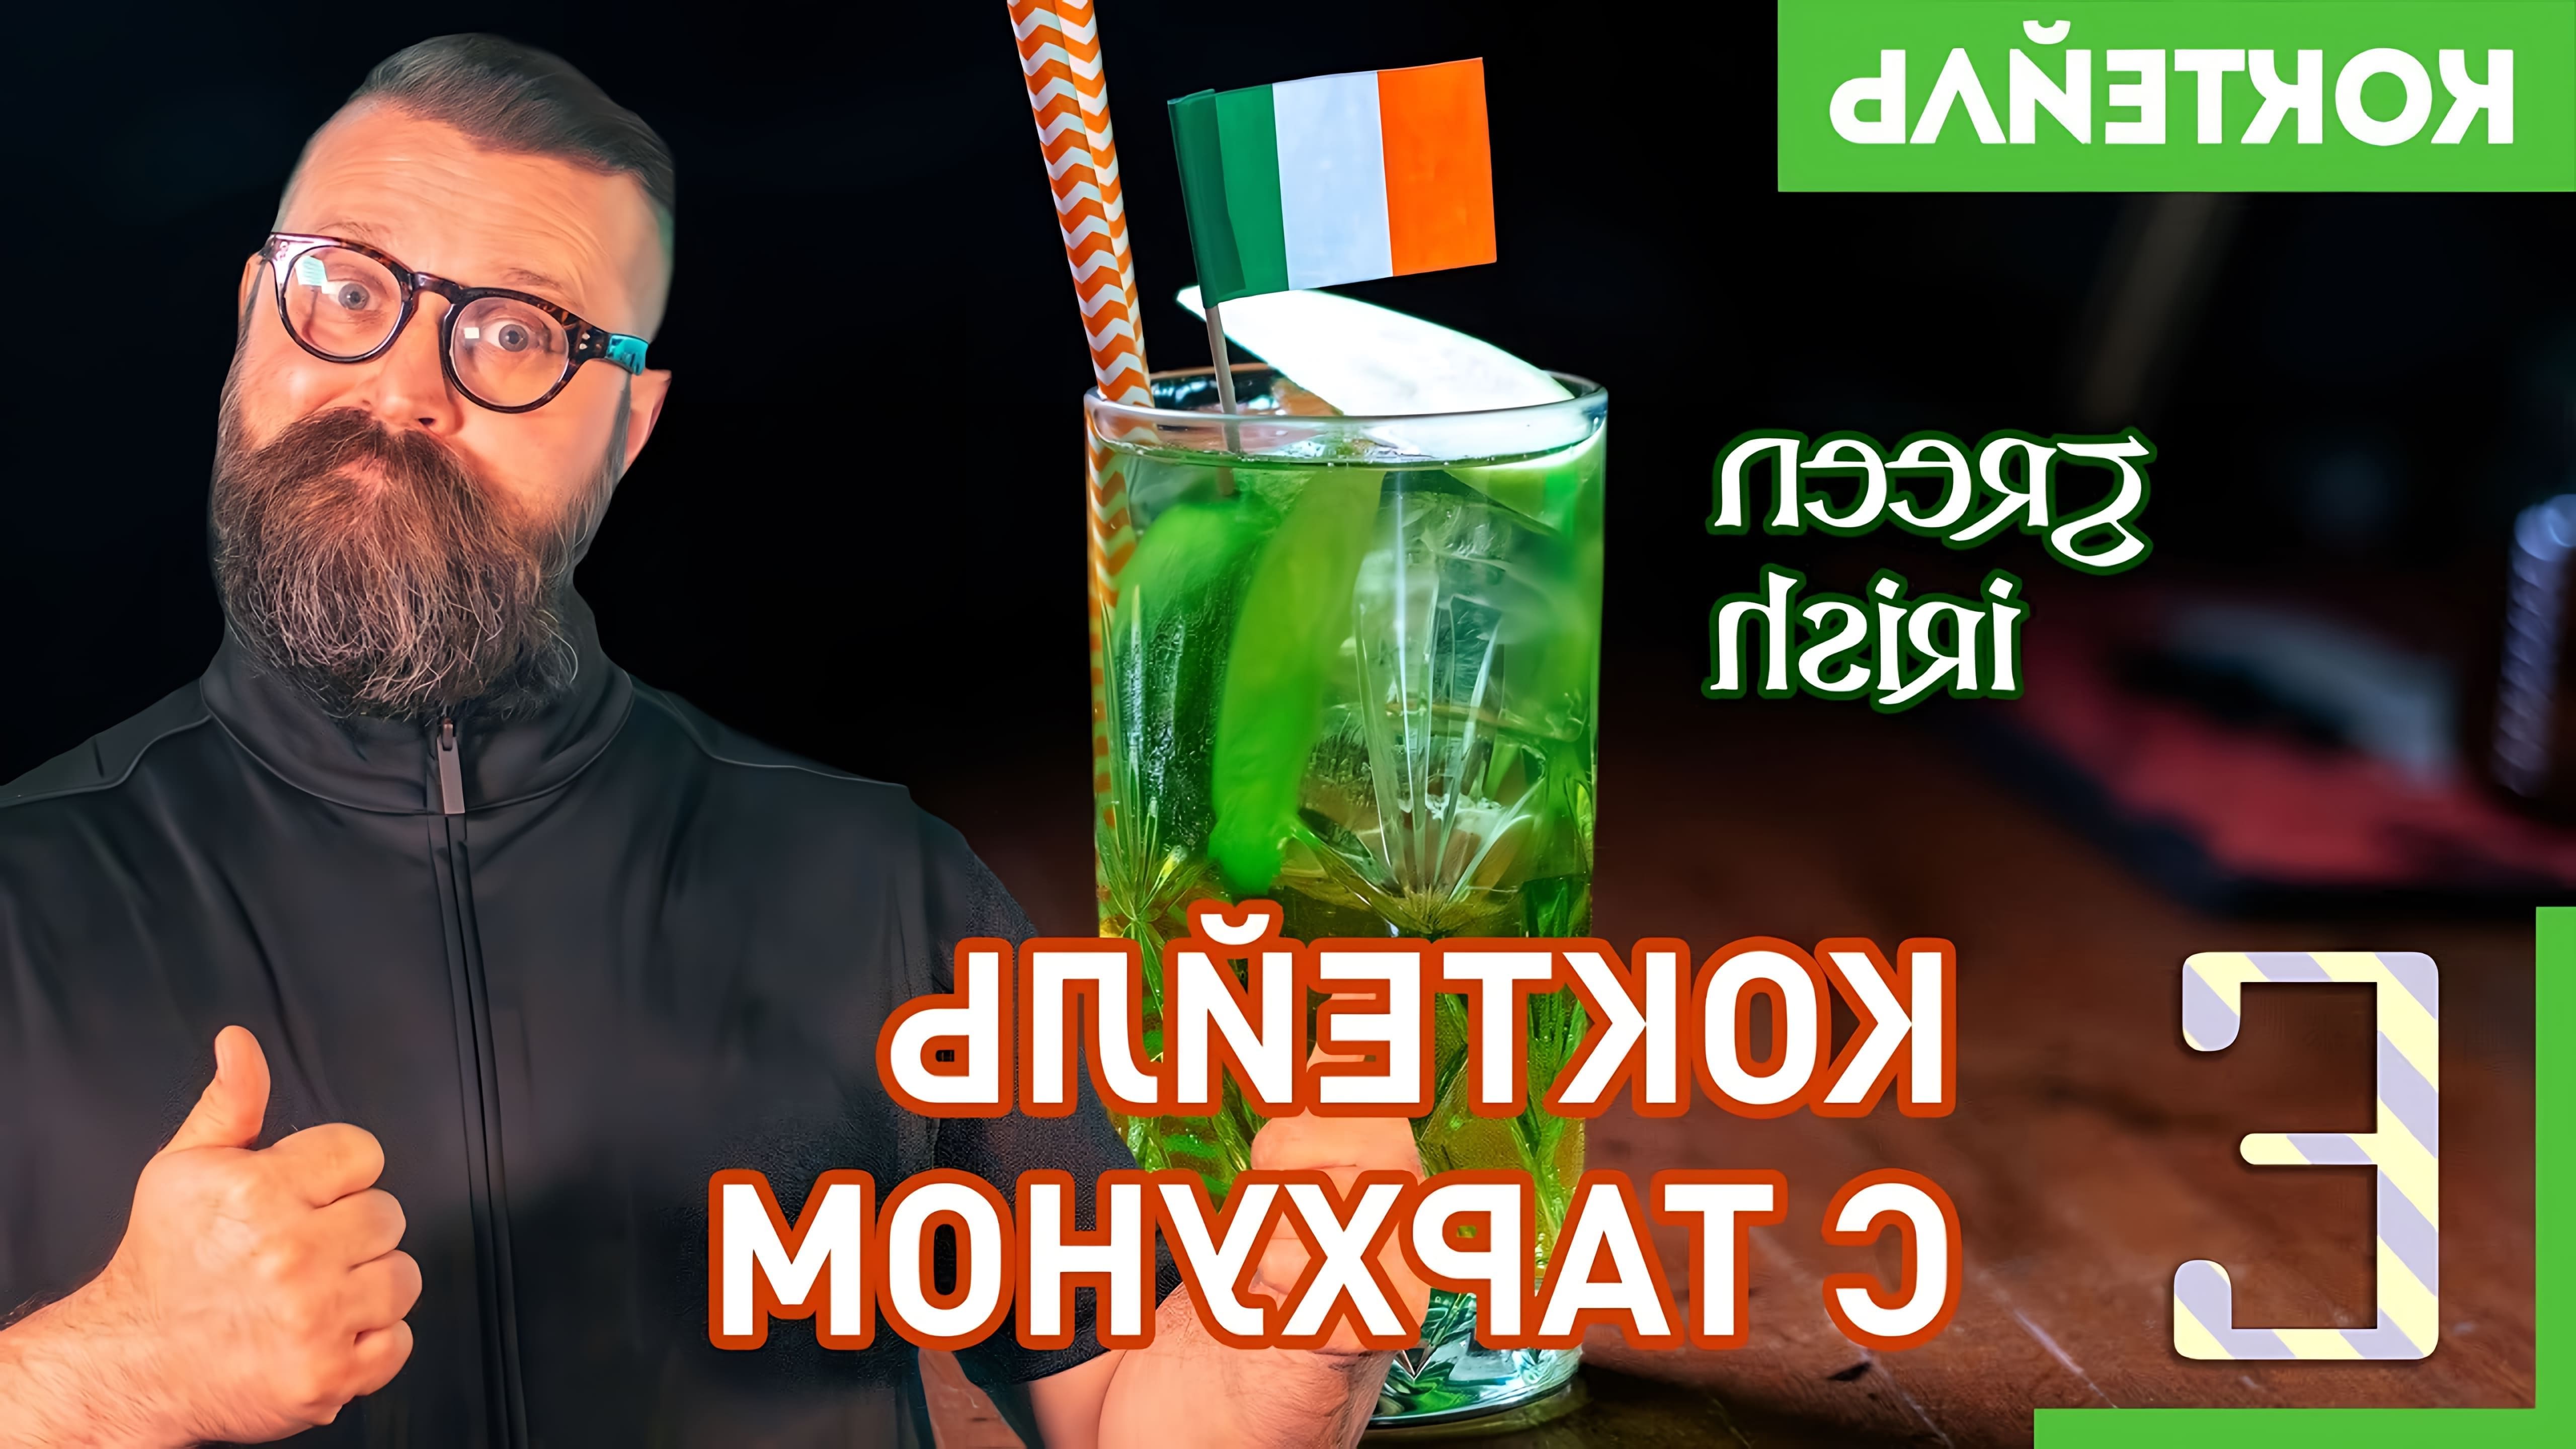 В этом видео Василий Захаров готовит коктейль "Green Irish" с использованием джемисона, тархуна, яблочного сиропа и лайма